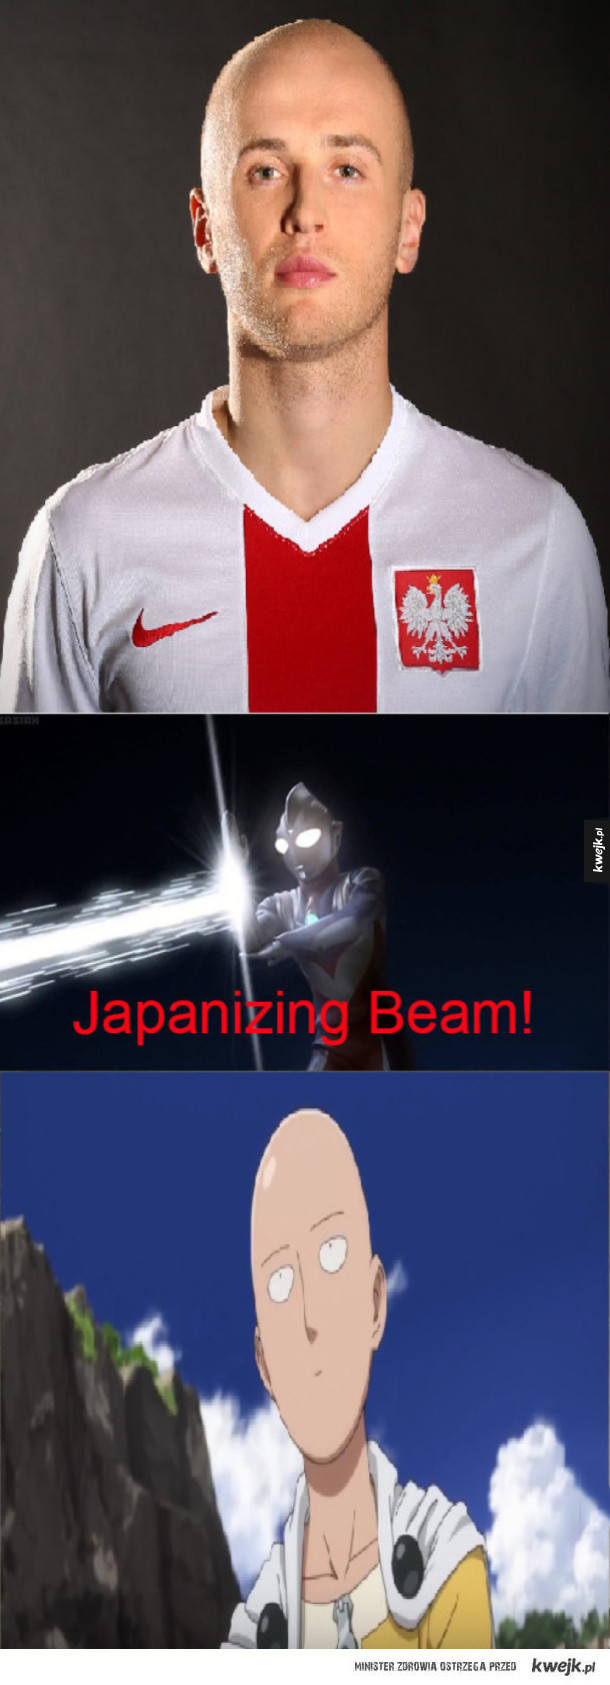 Japanizing beam